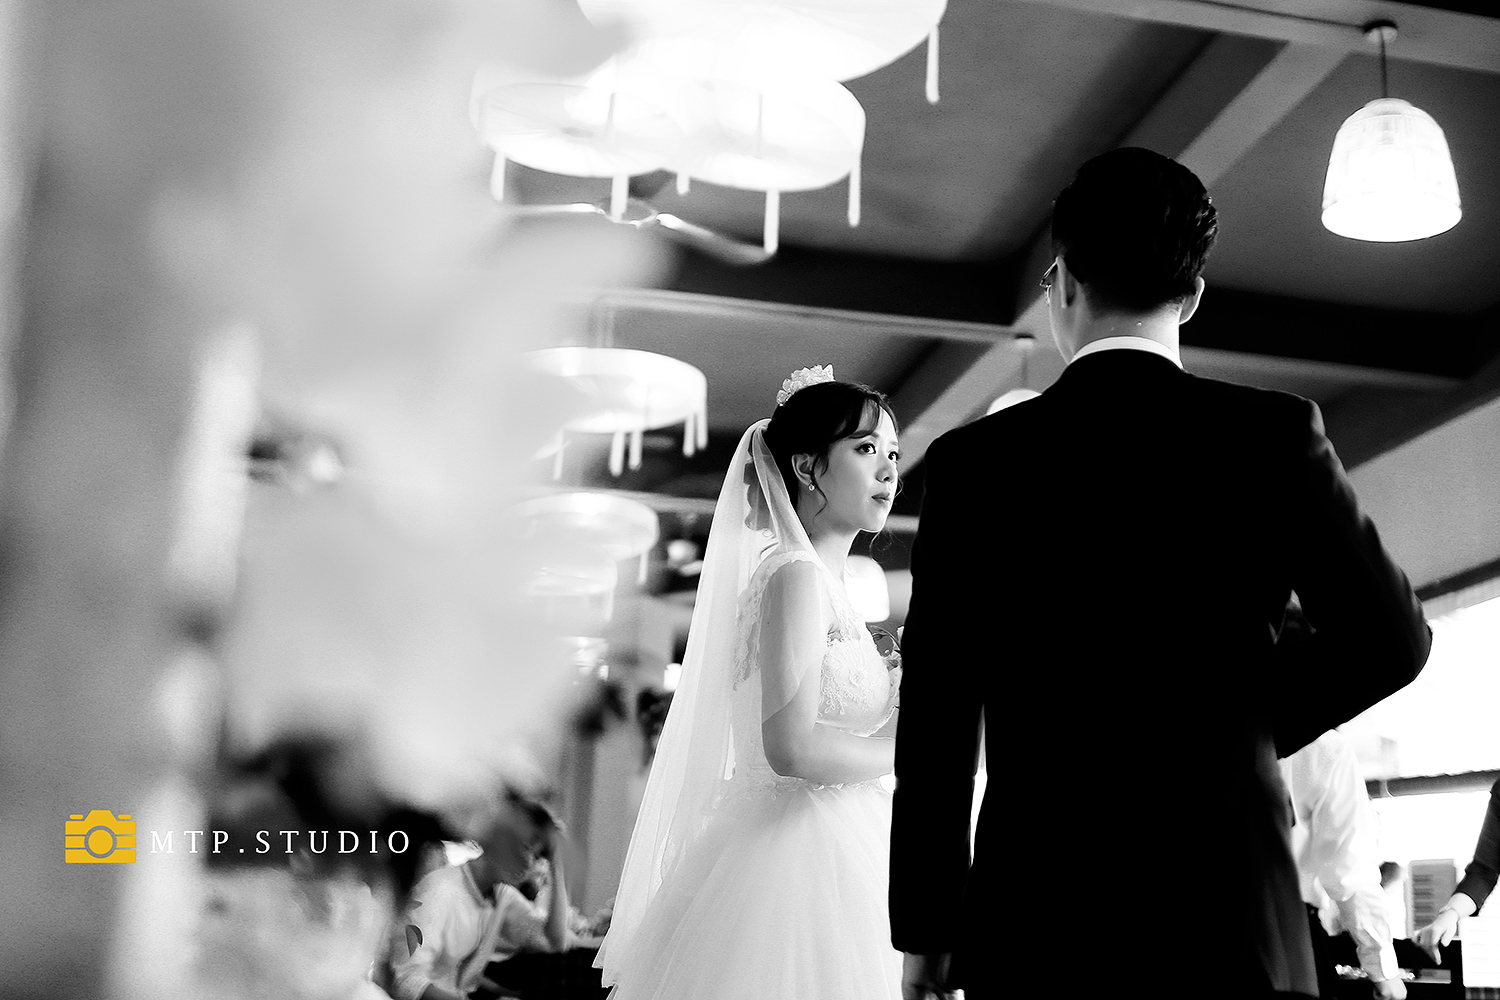 Chụp ảnh ăn hỏi-Chụp phóng sự cưới đẹp ở Hà Nội -MTP STUDIO 2